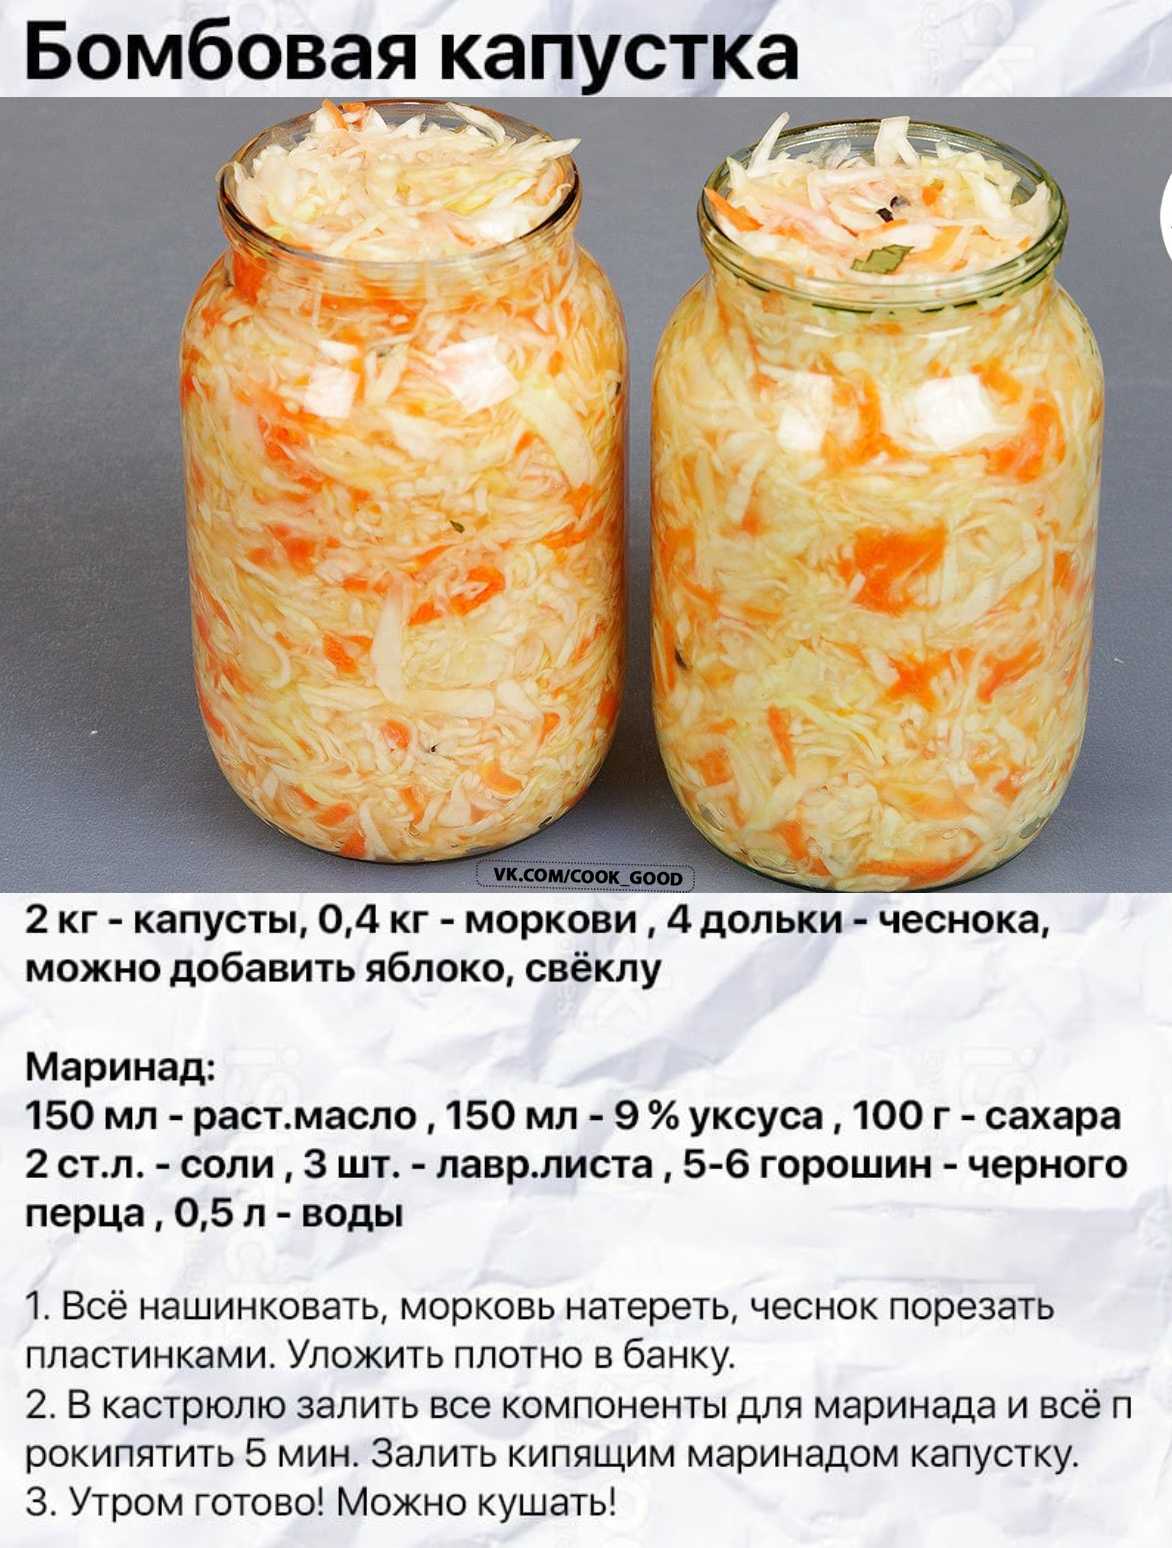 Рецепт квашенной капусты в 10 литрах воды